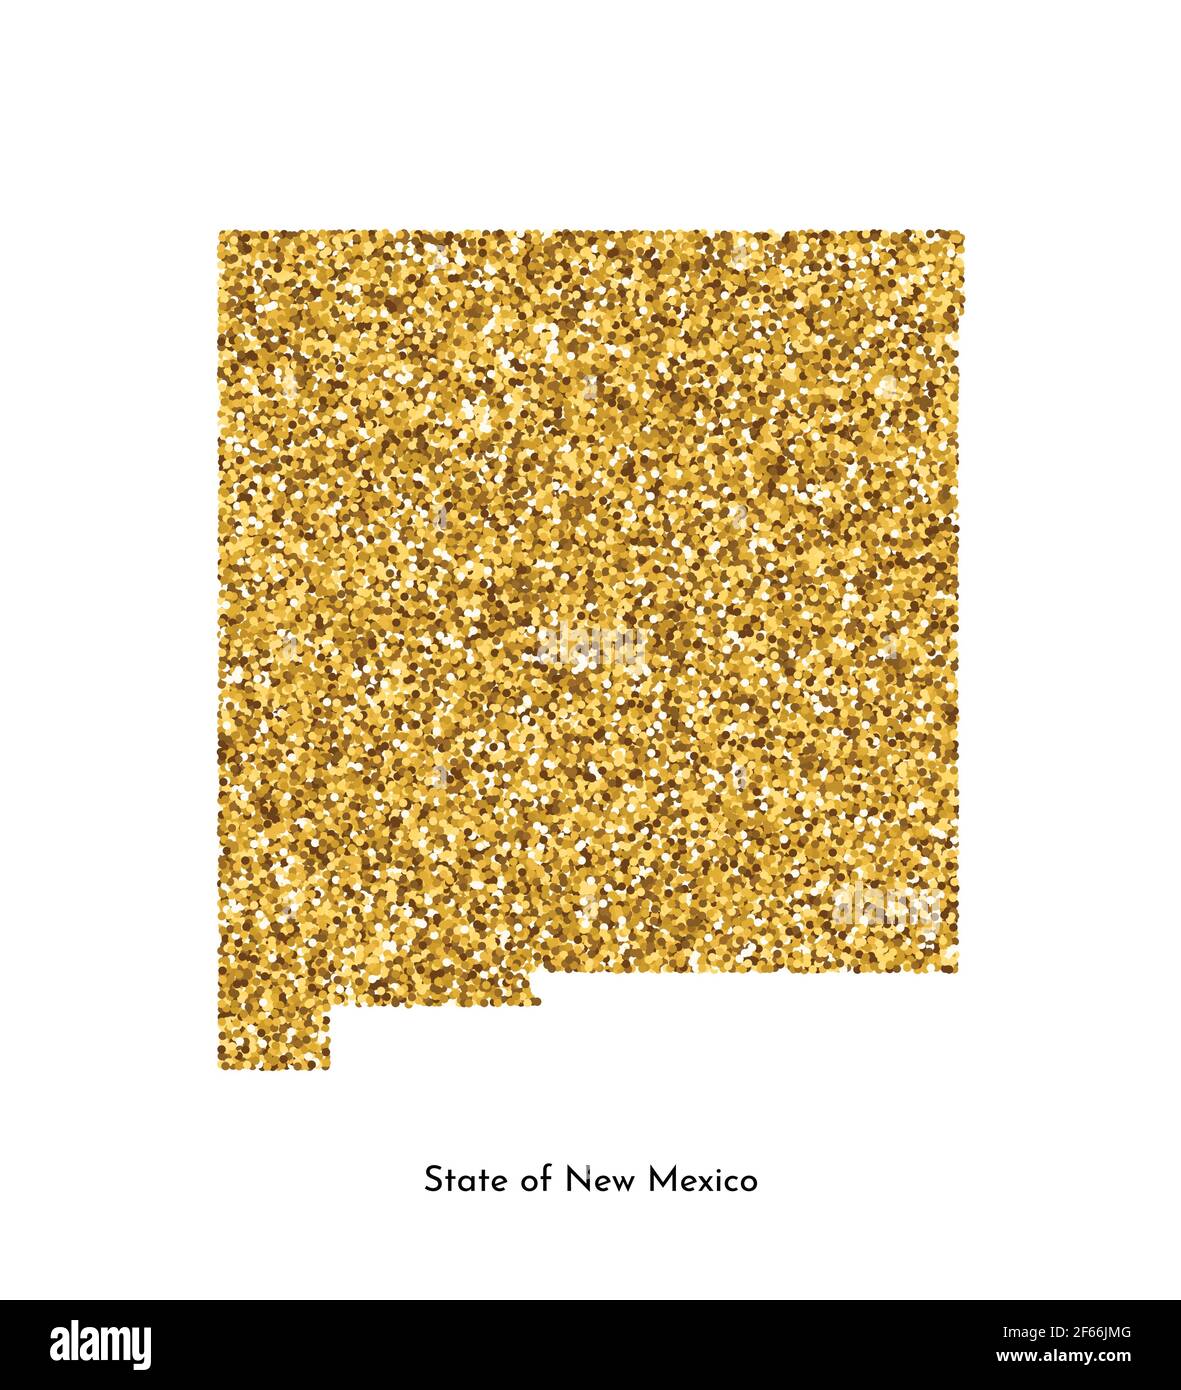 Vektor isolierte Illustration mit vereinfachter Karte des Staates New Mexico (USA). Glänzende goldfarbene Glitzerstruktur. Dekorationsvorlage. Stock Vektor